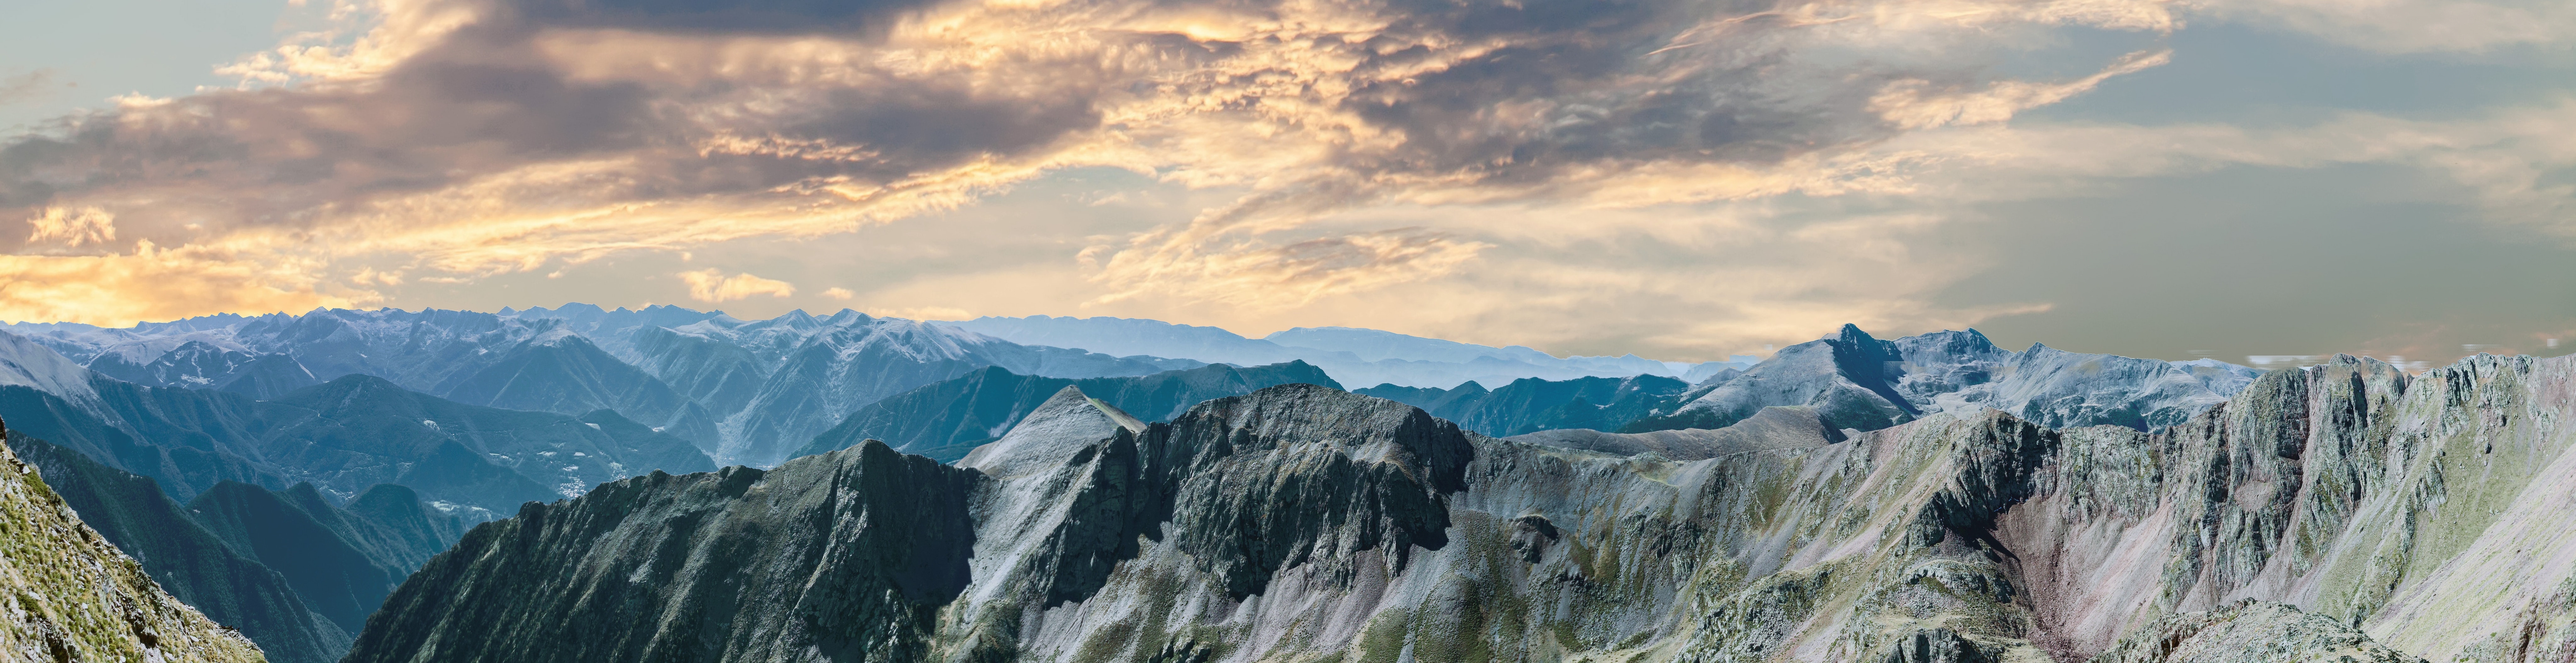 1000+ Beautiful Mountain Range Photos · Pexels · Free Stock Photos